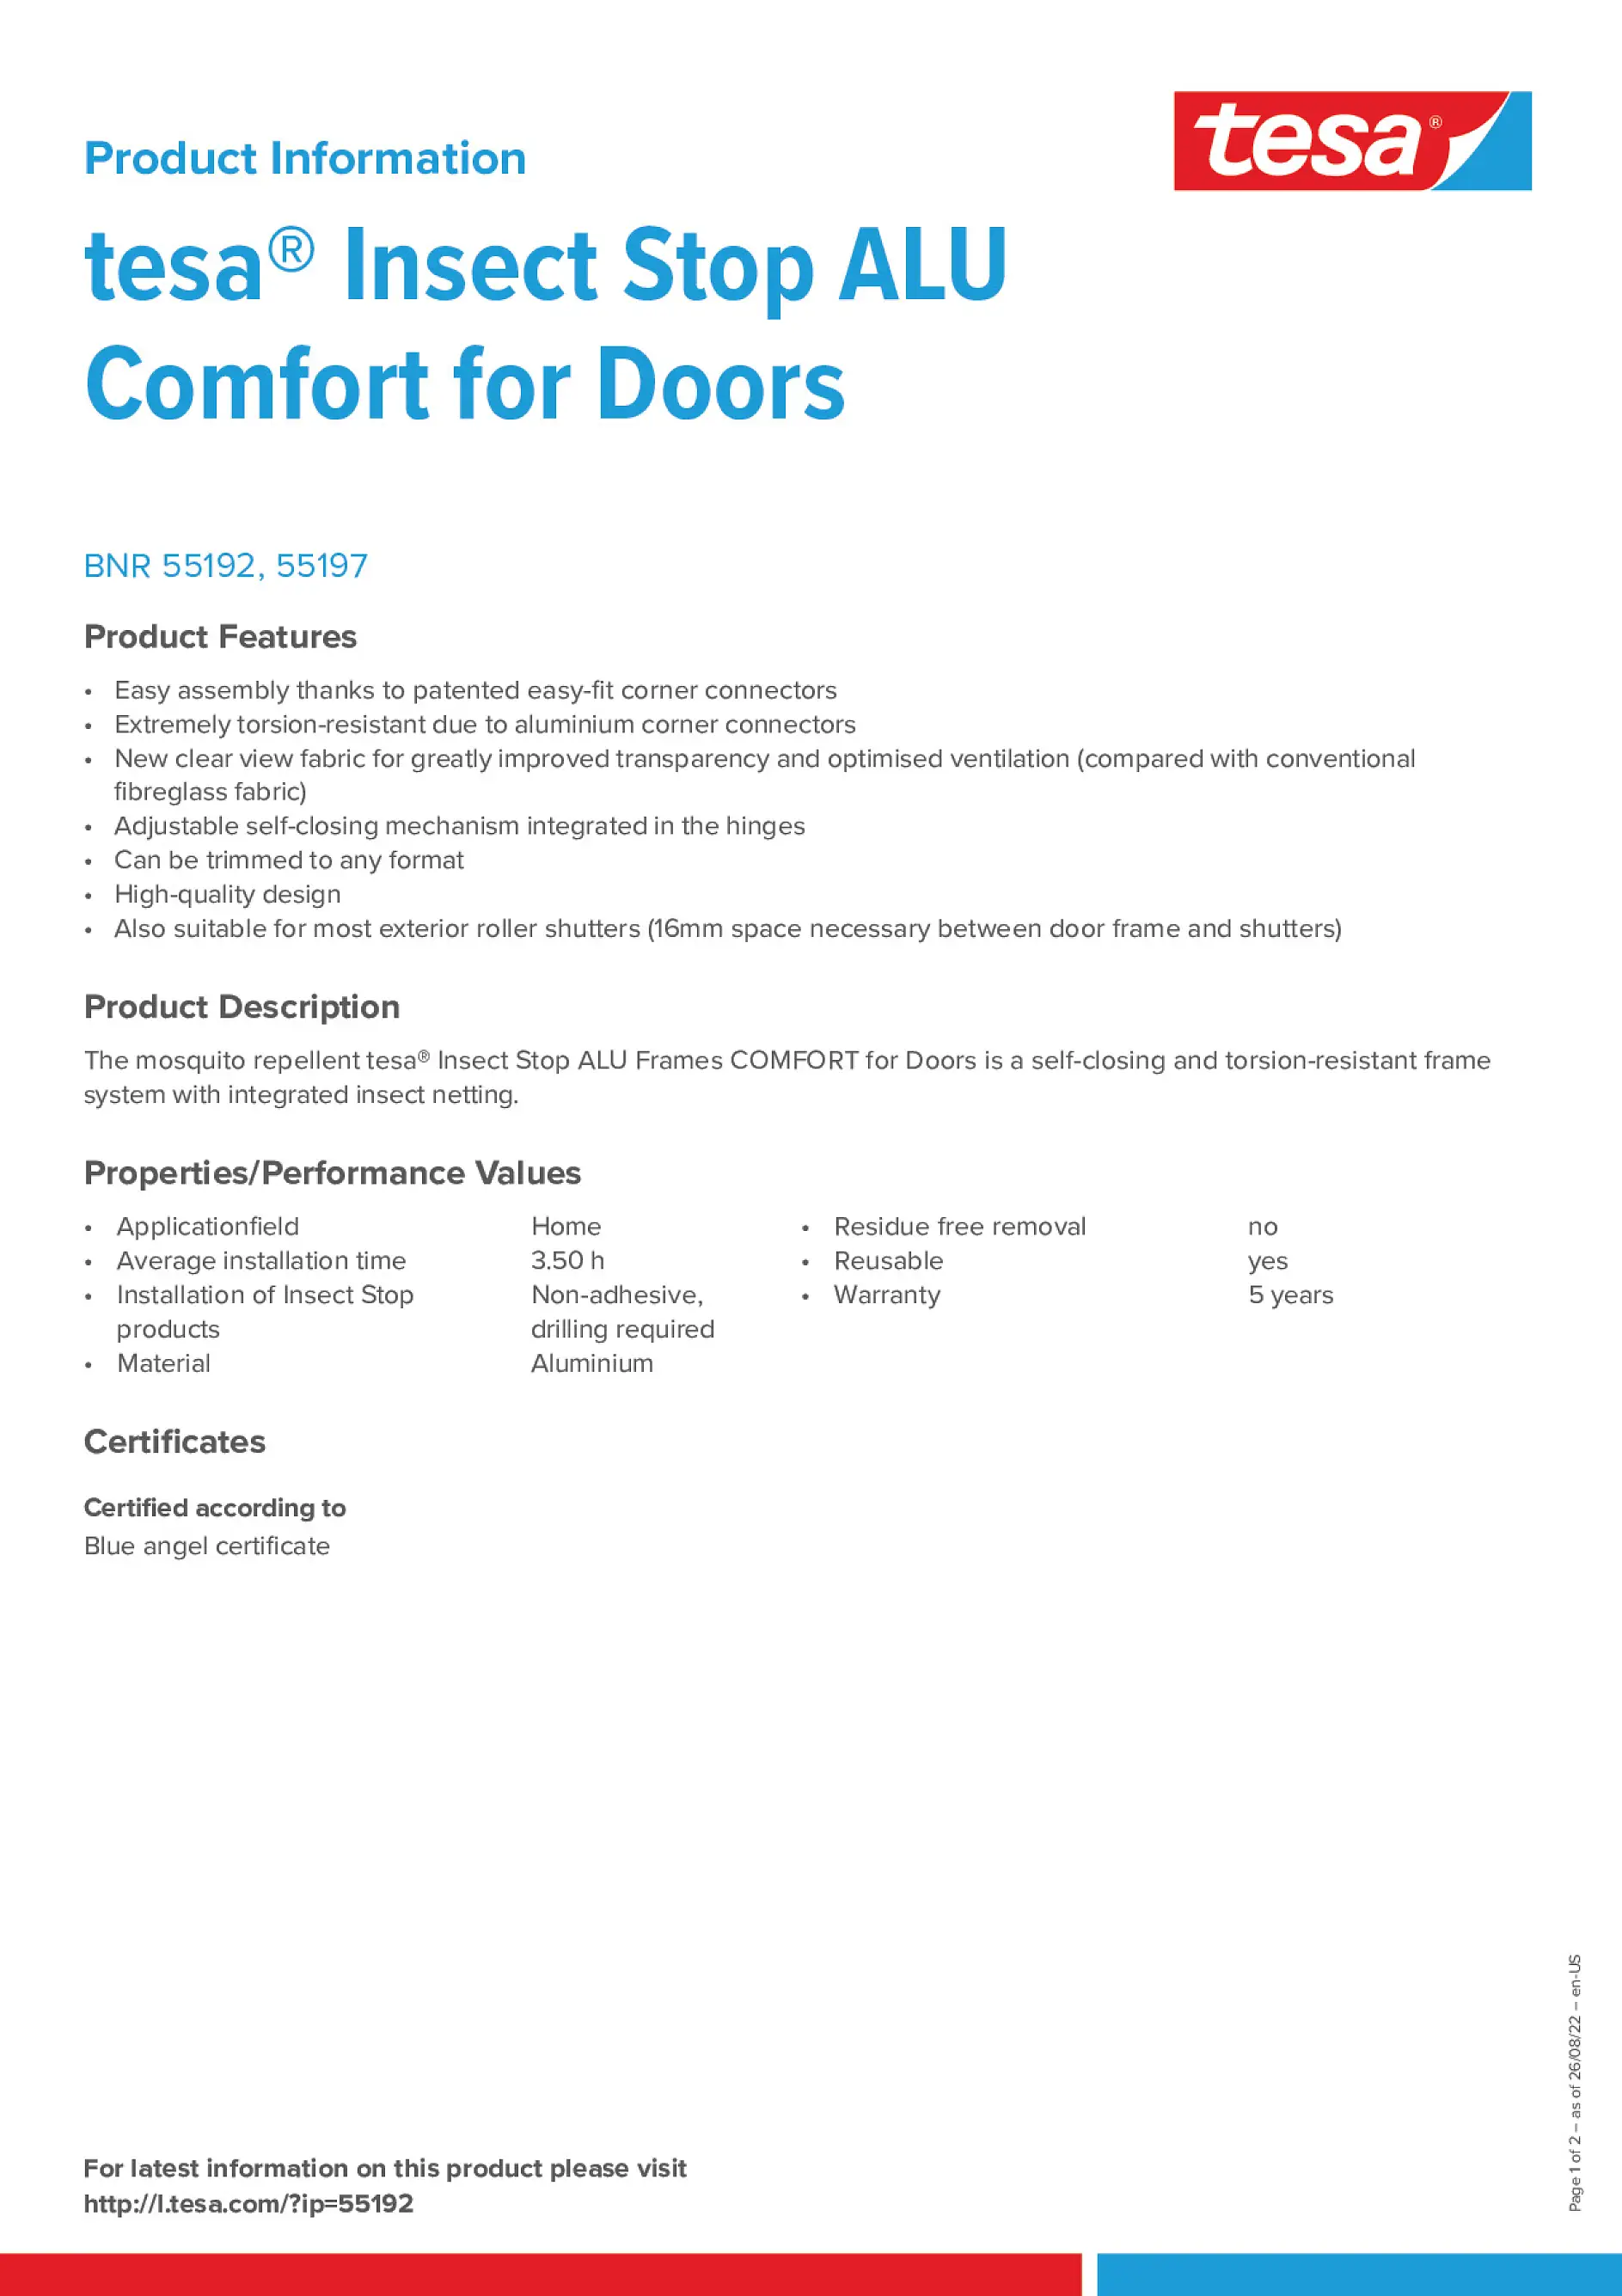 insect-alu-frames-comfort-doors_en-US